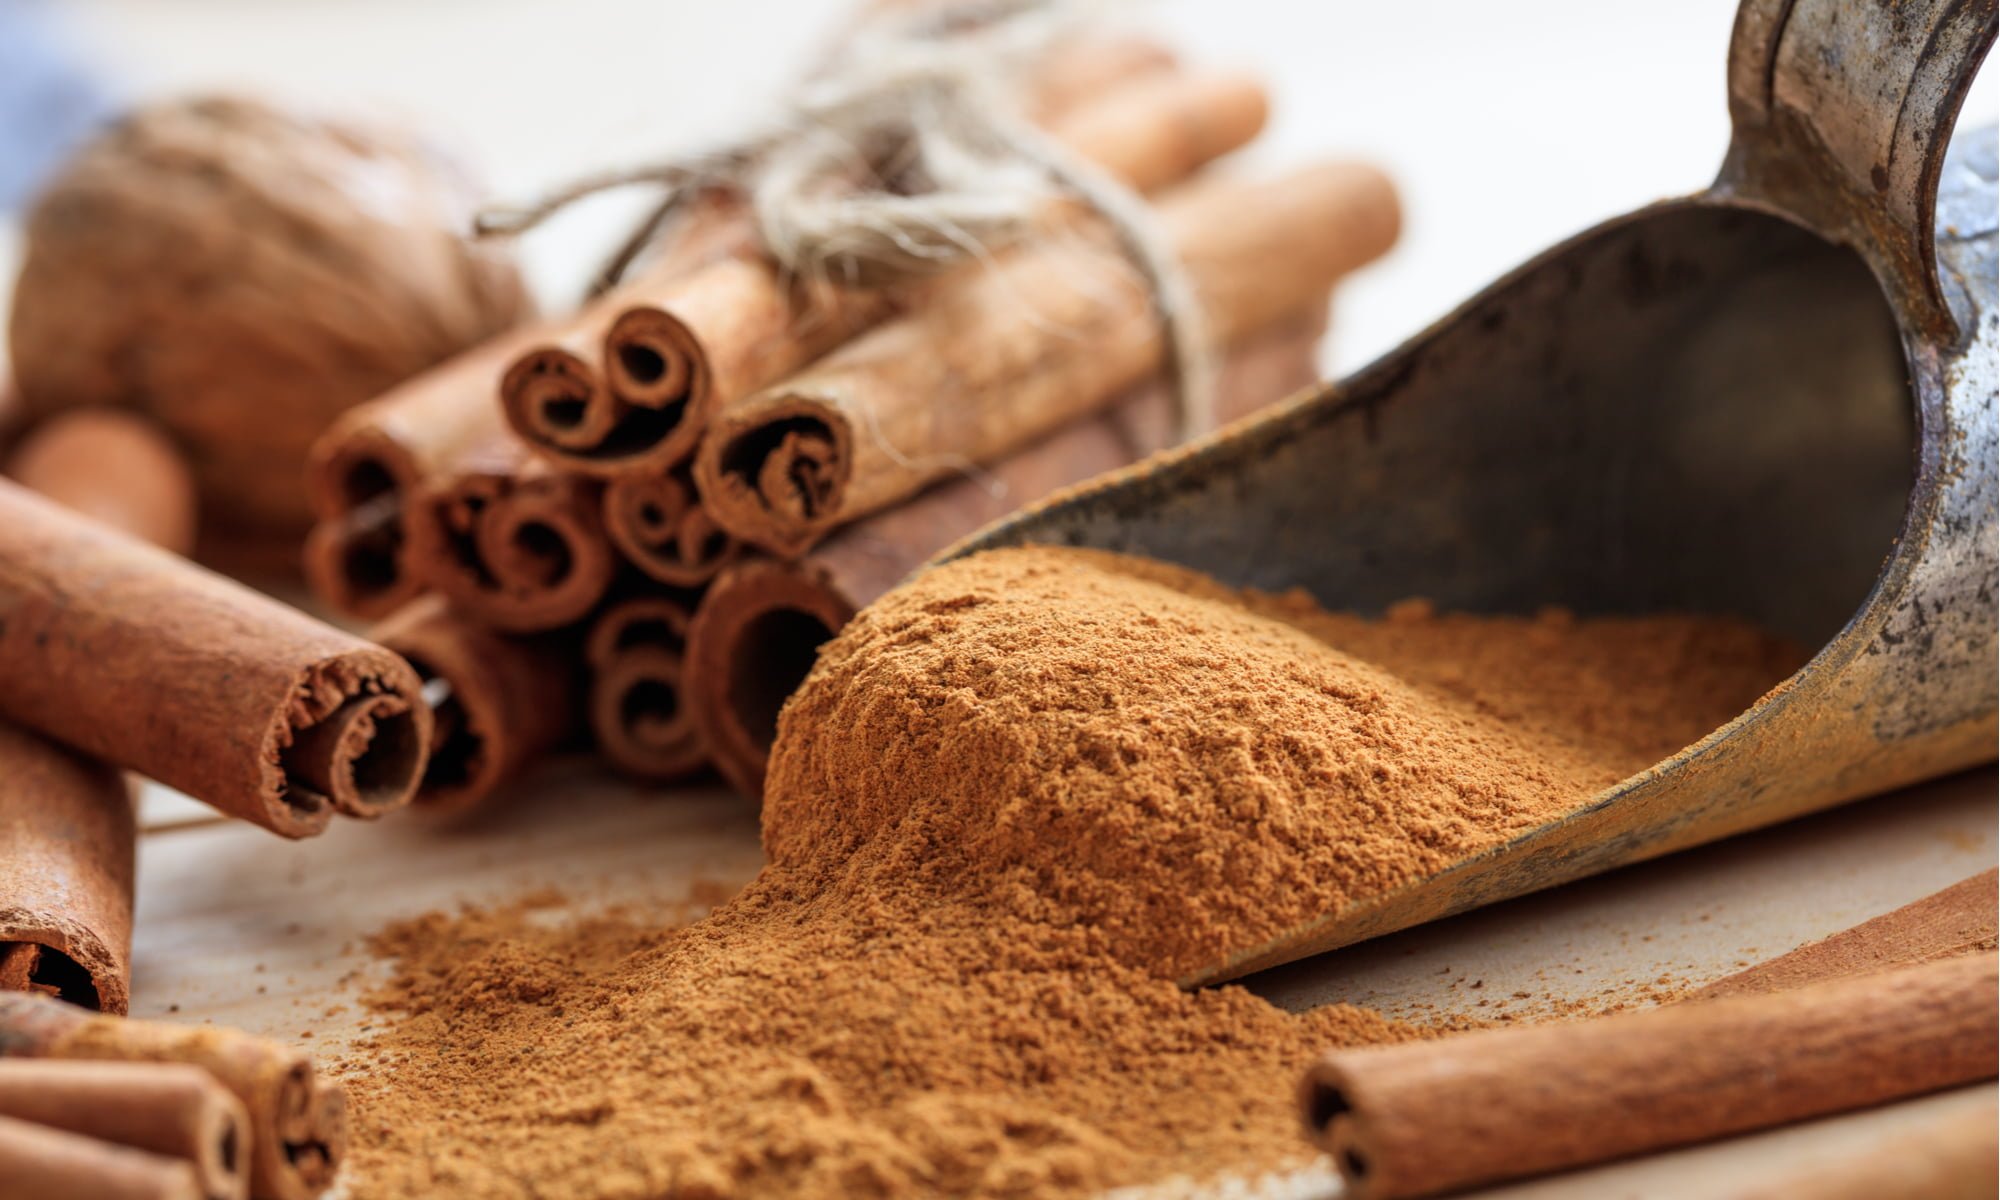 5 Amazing Health Benefits of Cinnamon